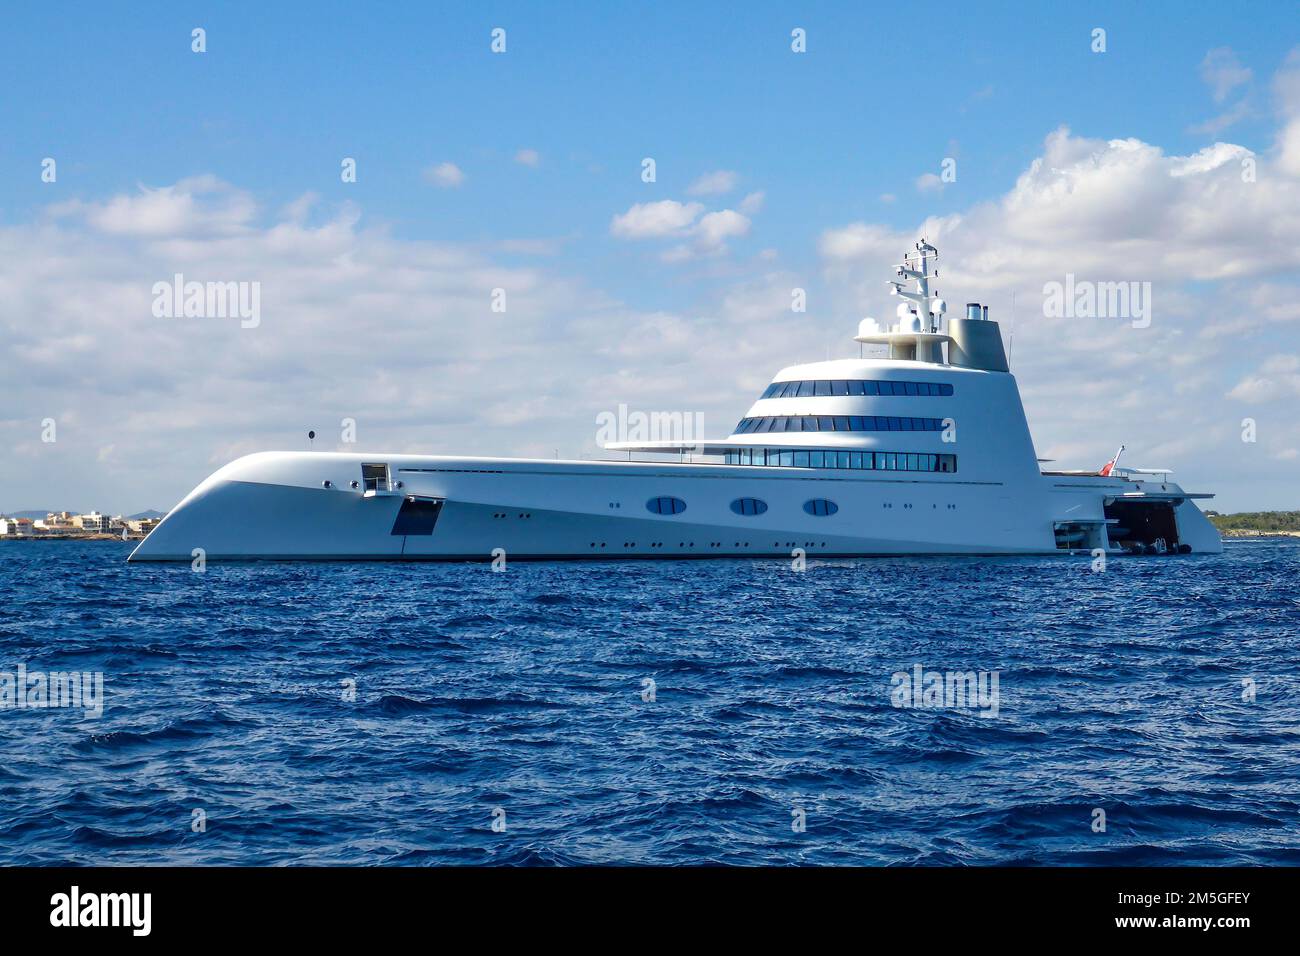 Yacht Motor yacht A construit en 2008 au chantier naval Blohm Voss GmbH, longueur 119 mètres, Majorque, Espagne Banque D'Images